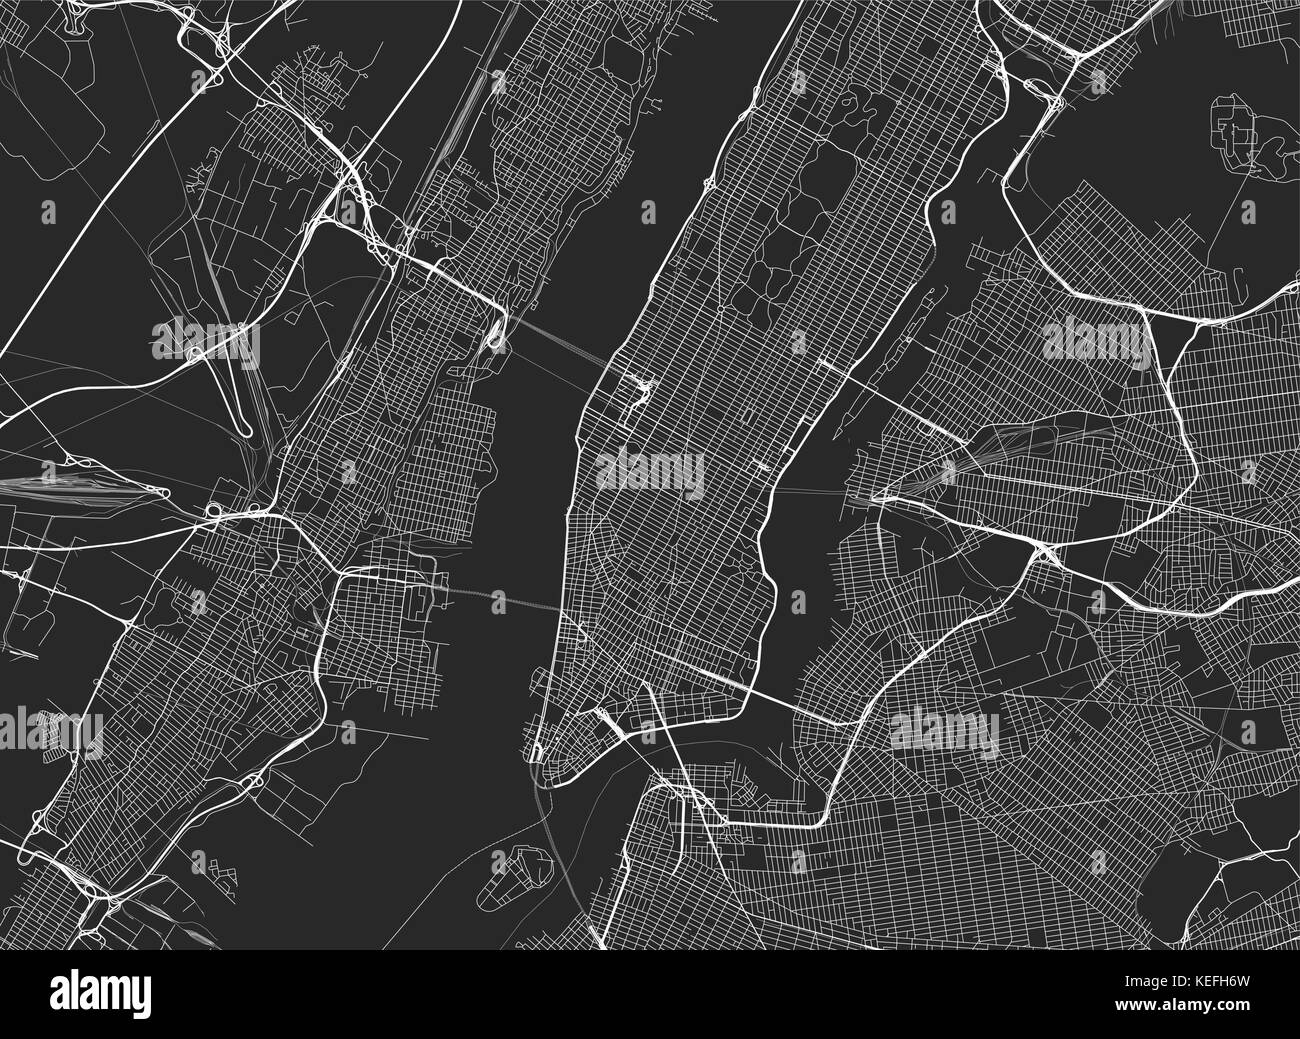 Sfondo vettoriale con tutte le strade di New York e la mappa dei dintorni. Illustrazione Vettoriale